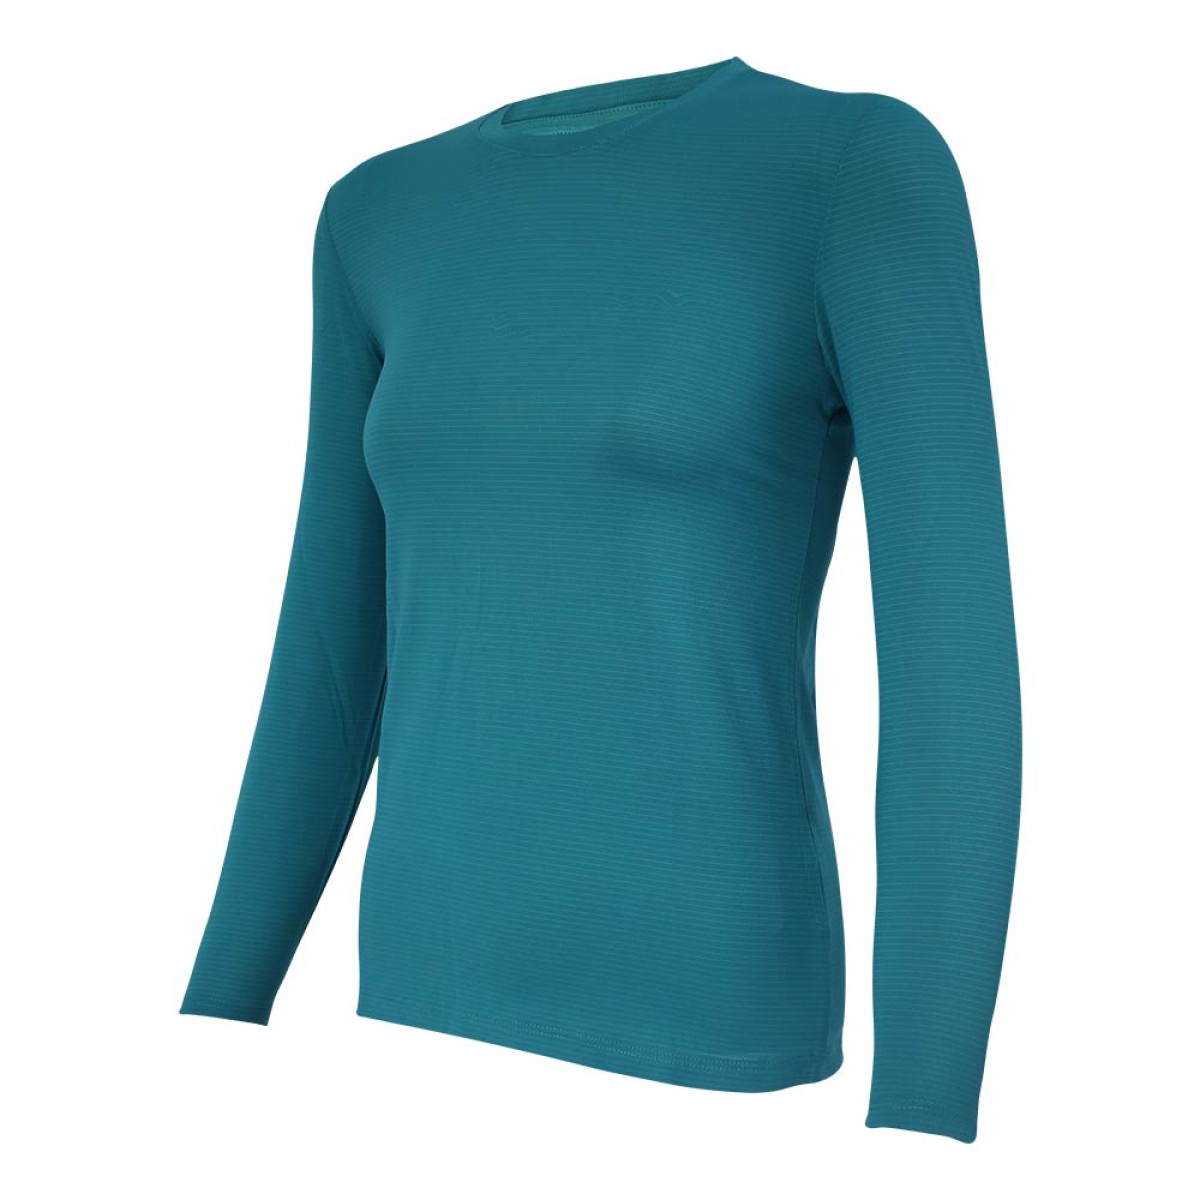 women-knitted-long-sleeve-t-shirt-kklst16945-5a-1